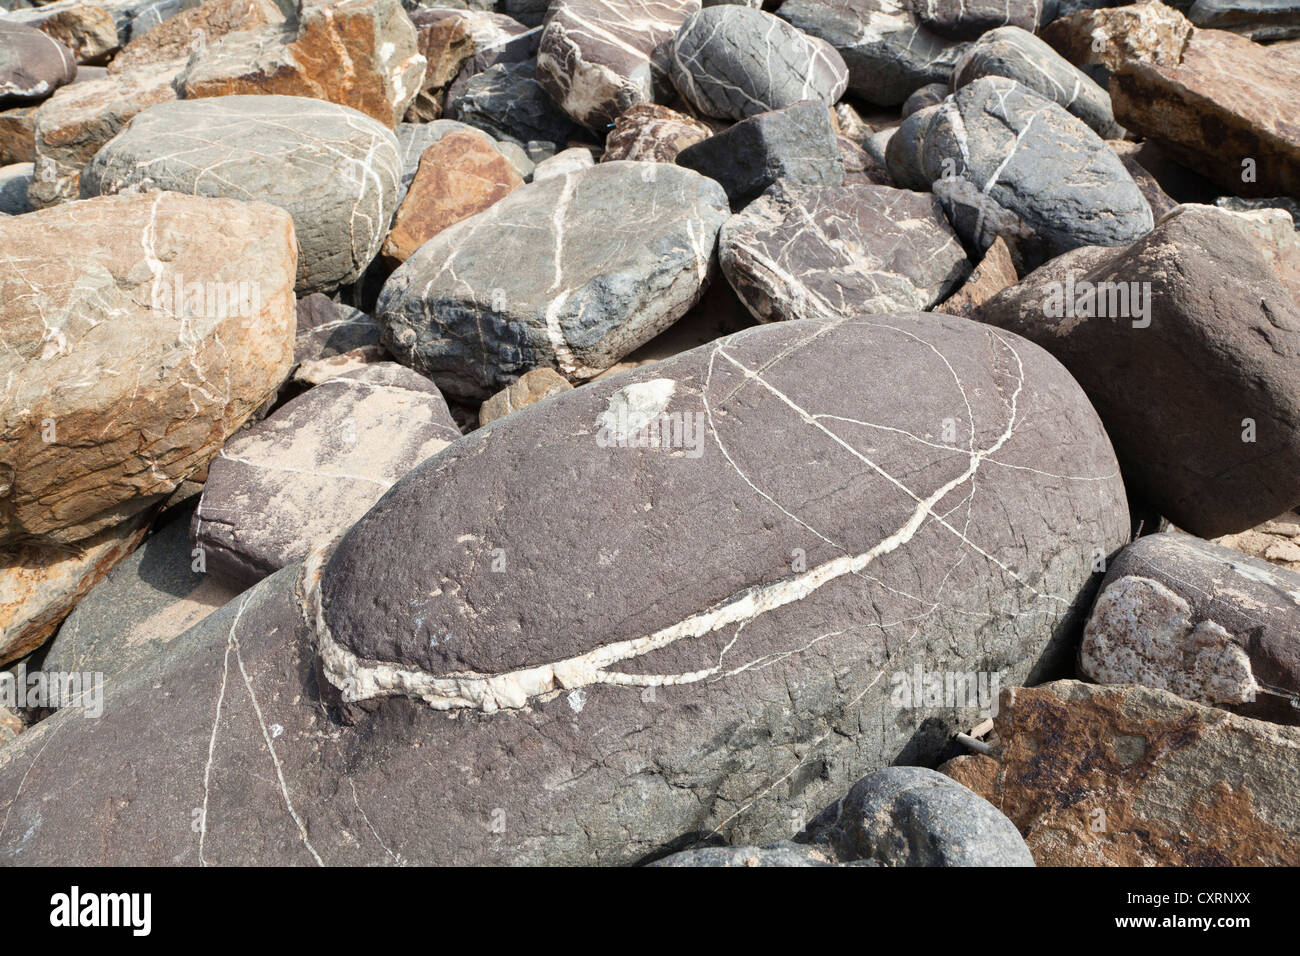 Vene di quarzo nelle rocce, costa atlantica, Portogallo, Europa Foto Stock